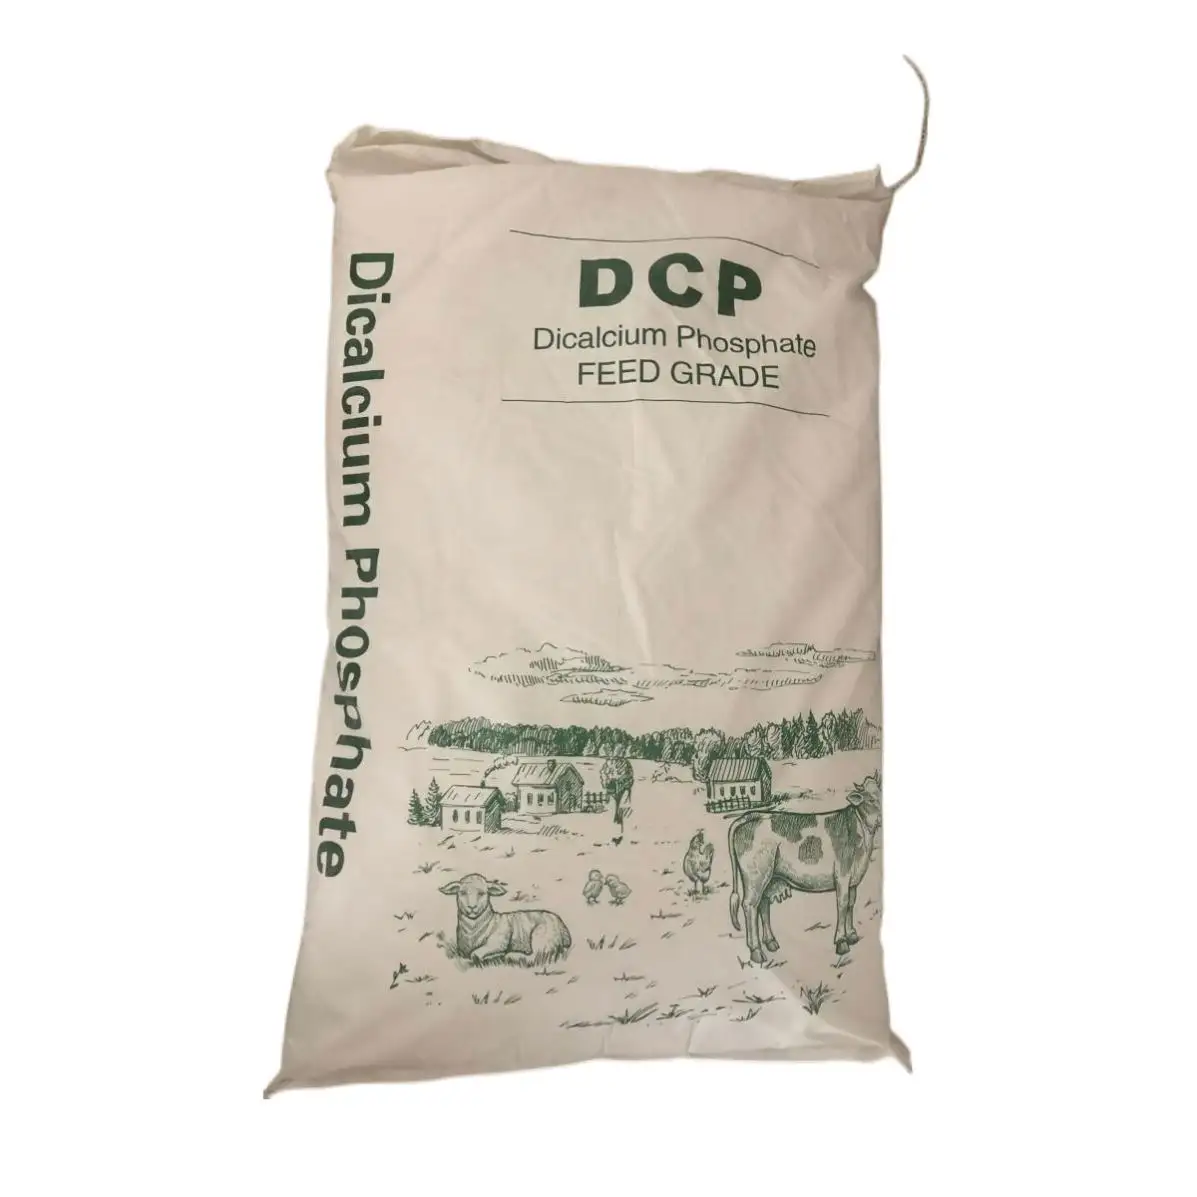 Grado de alimentación de fosfato dicálcico granular DCP blanco de alta calidad para aditivos de alimentación animal